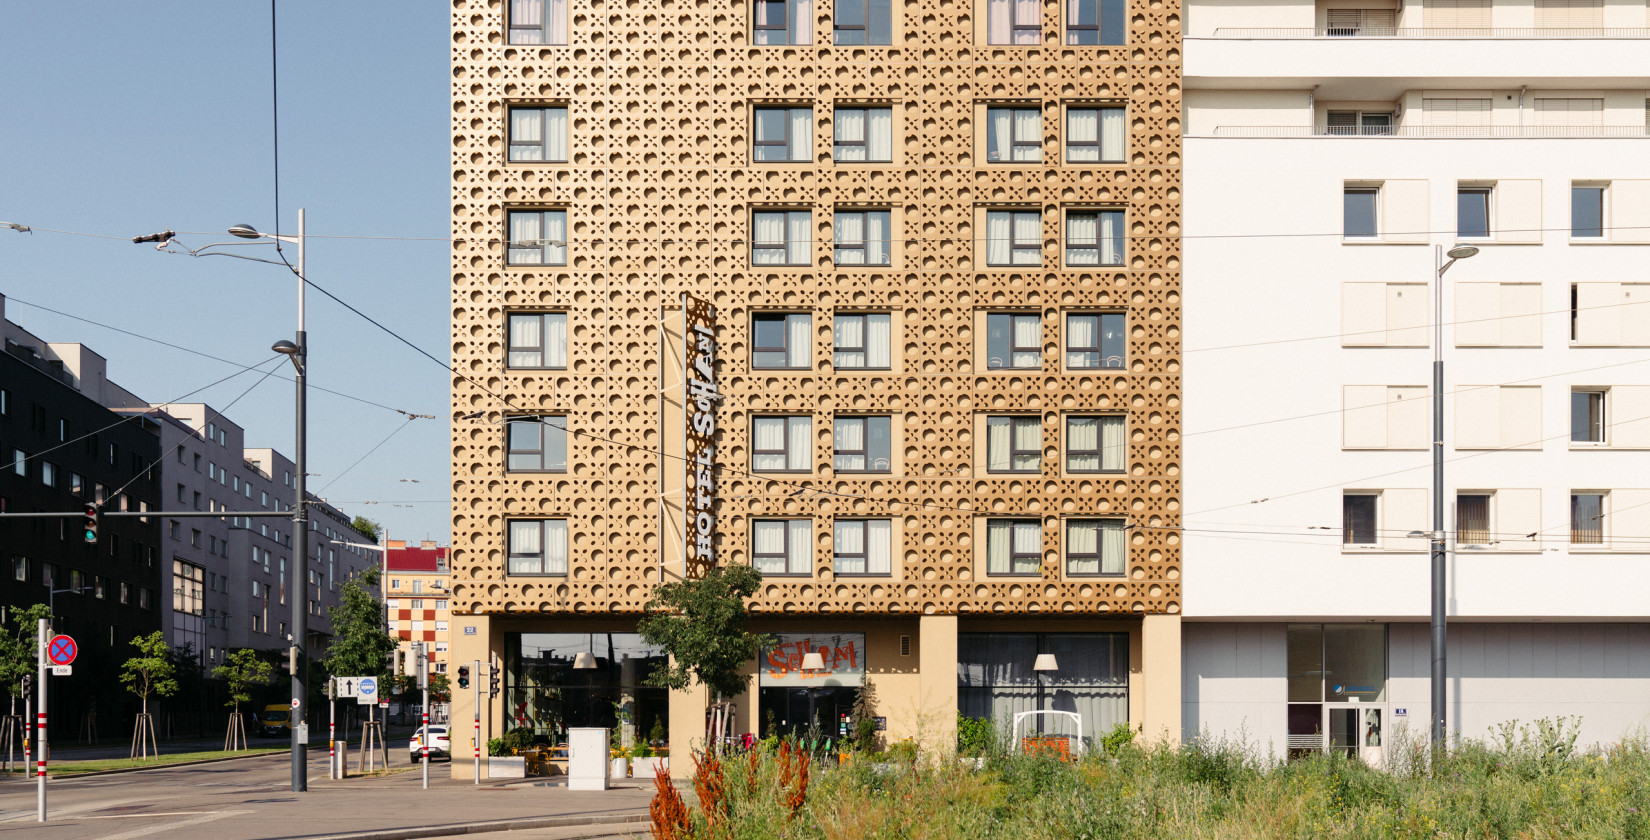 Außenansicht des Hotels Schani Wien mit der vom Wiener Geflecht inspirierten Fassade 